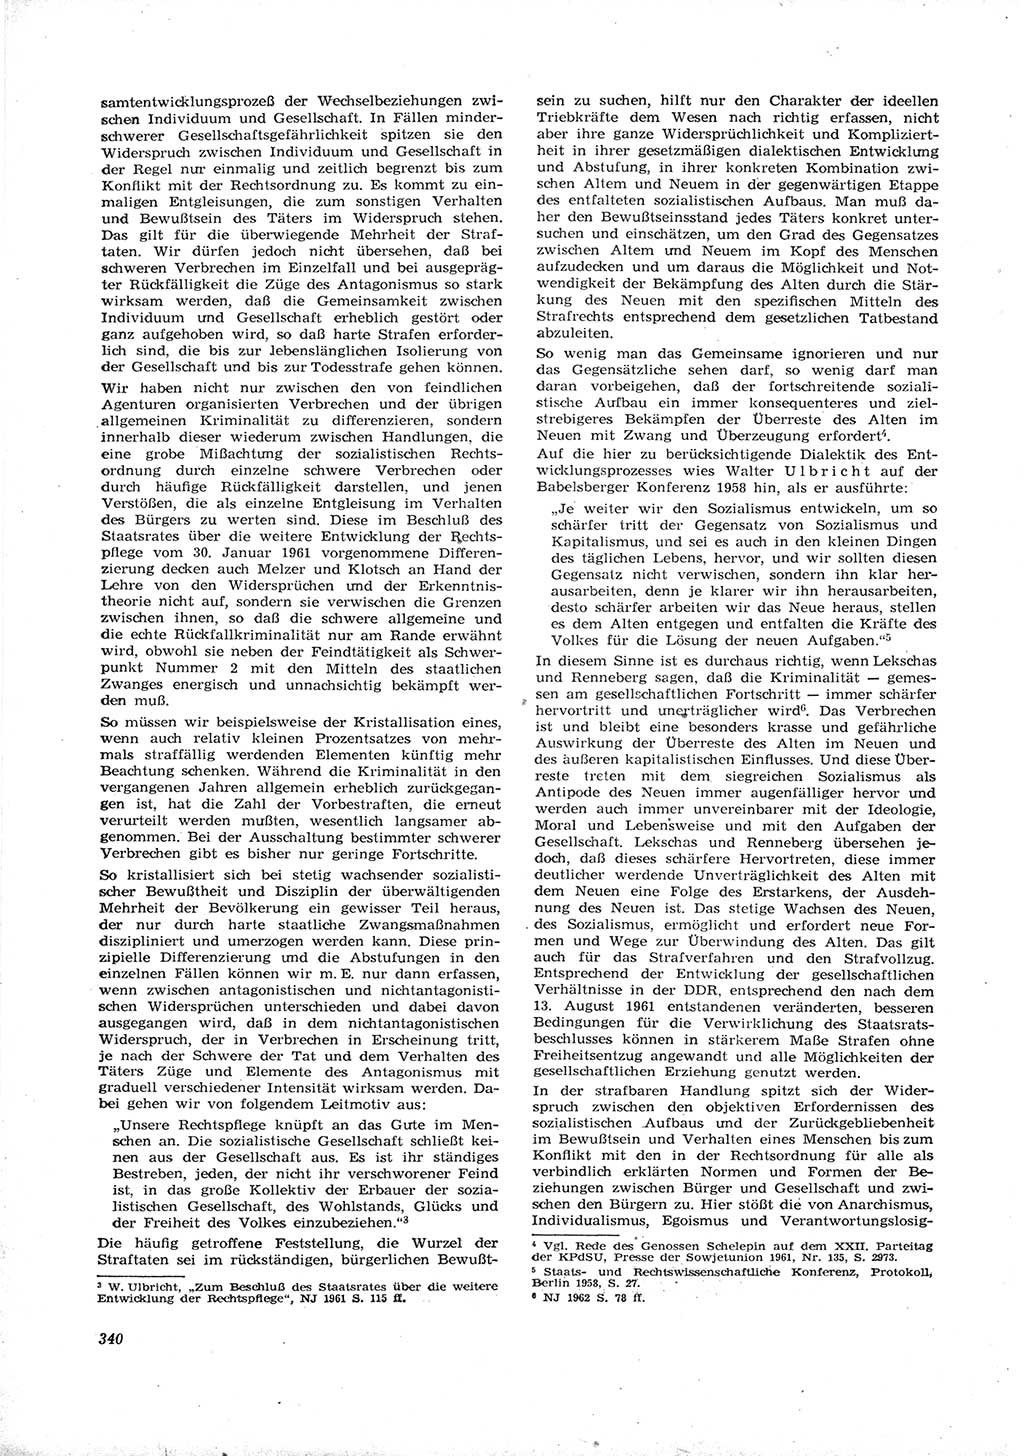 Neue Justiz (NJ), Zeitschrift für Recht und Rechtswissenschaft [Deutsche Demokratische Republik (DDR)], 16. Jahrgang 1962, Seite 340 (NJ DDR 1962, S. 340)